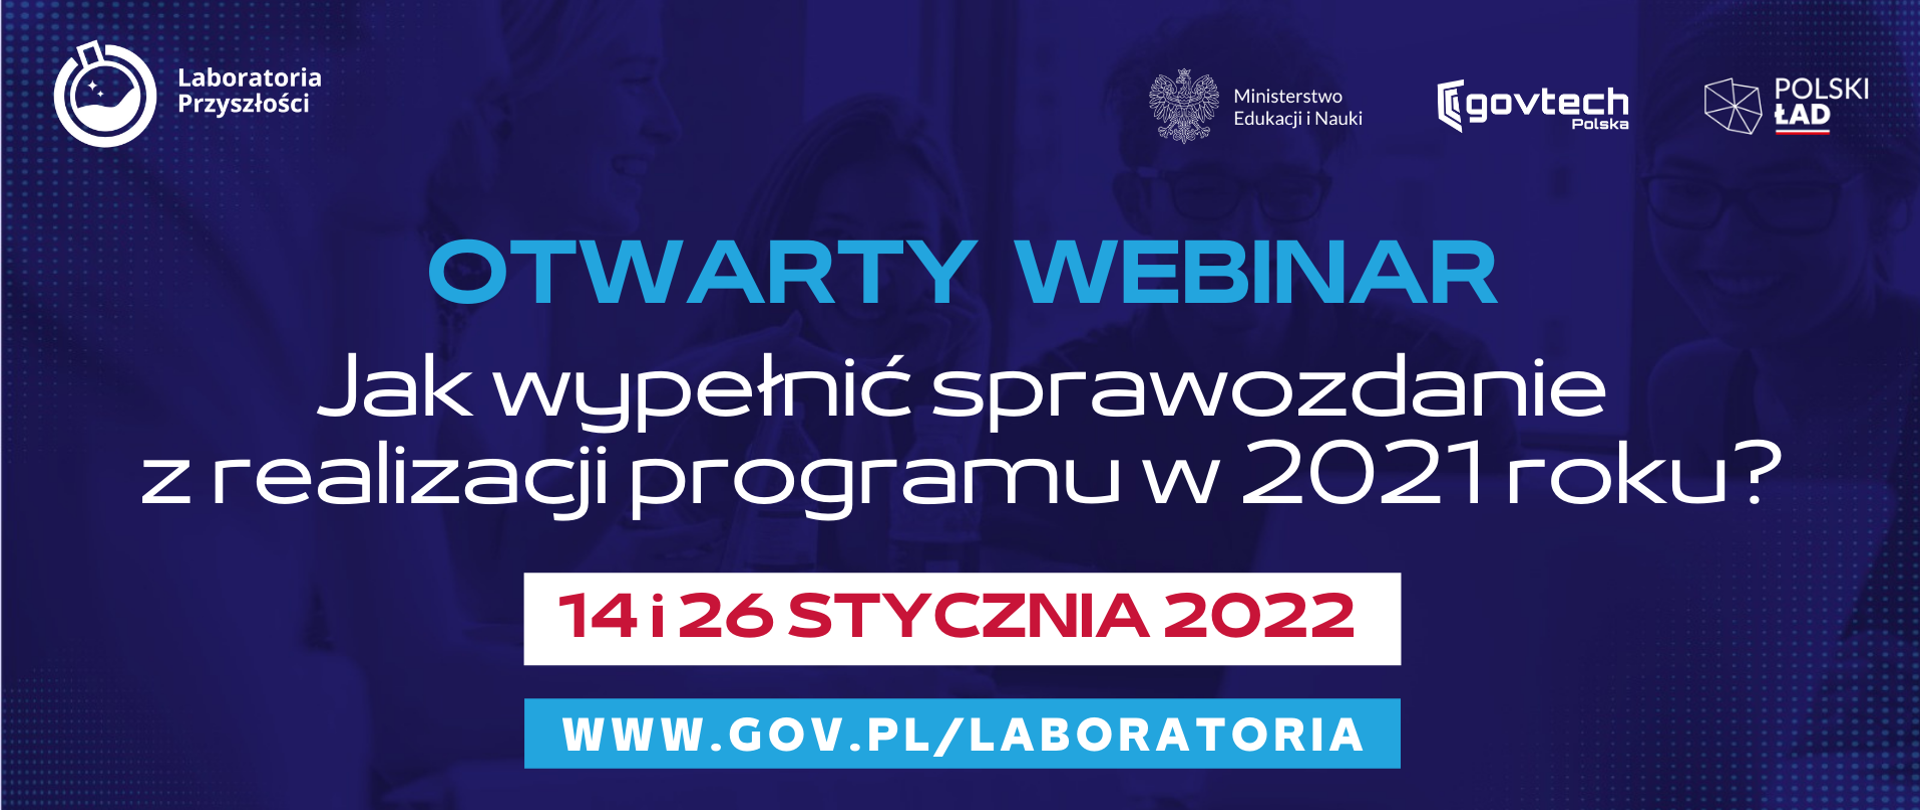 Otwarty webinar
Jak wypełnić sprawozdanie z realizacji programu w 2021 roku?
14 i 26 stycznia 2022
www.gov.pl/laboratoria